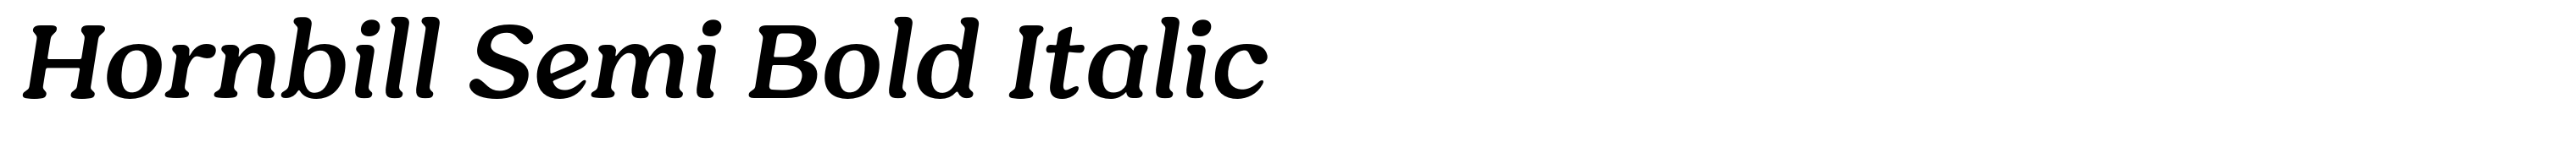 Hornbill Semi Bold Italic